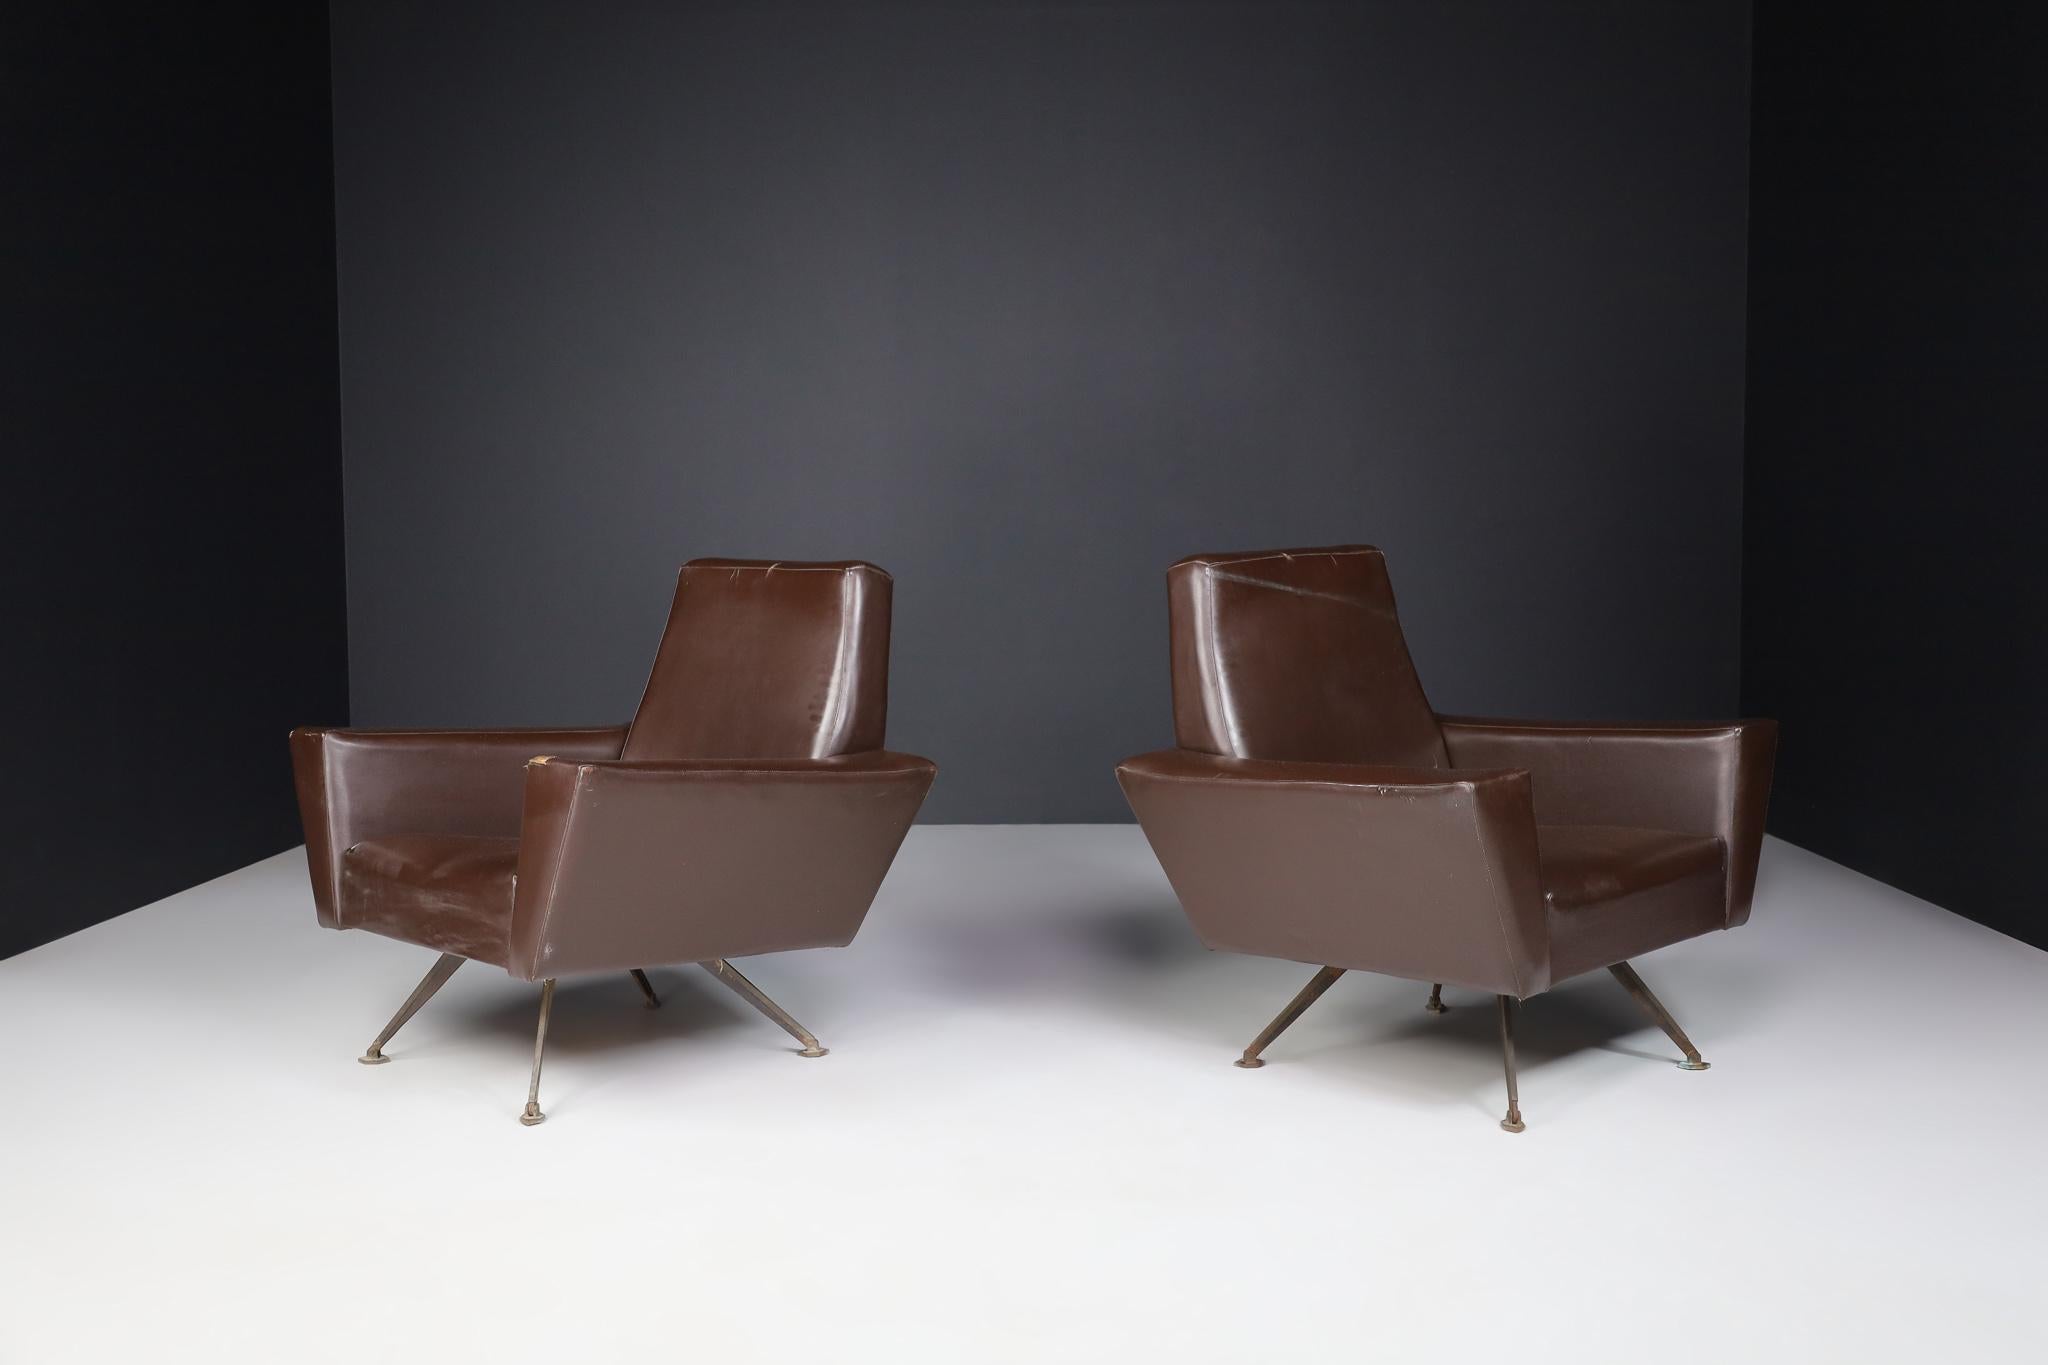 Paar Sessel von Studio Tecnico Italy A.P.A. und entworfen von Lenzi 1950s.

Dieses fantastische Sesselpaar wird in Italien hergestellt und zeichnet sich durch eine wohlproportionierte Konstruktion mit scharfen Winkeln und geraden Linien aus.